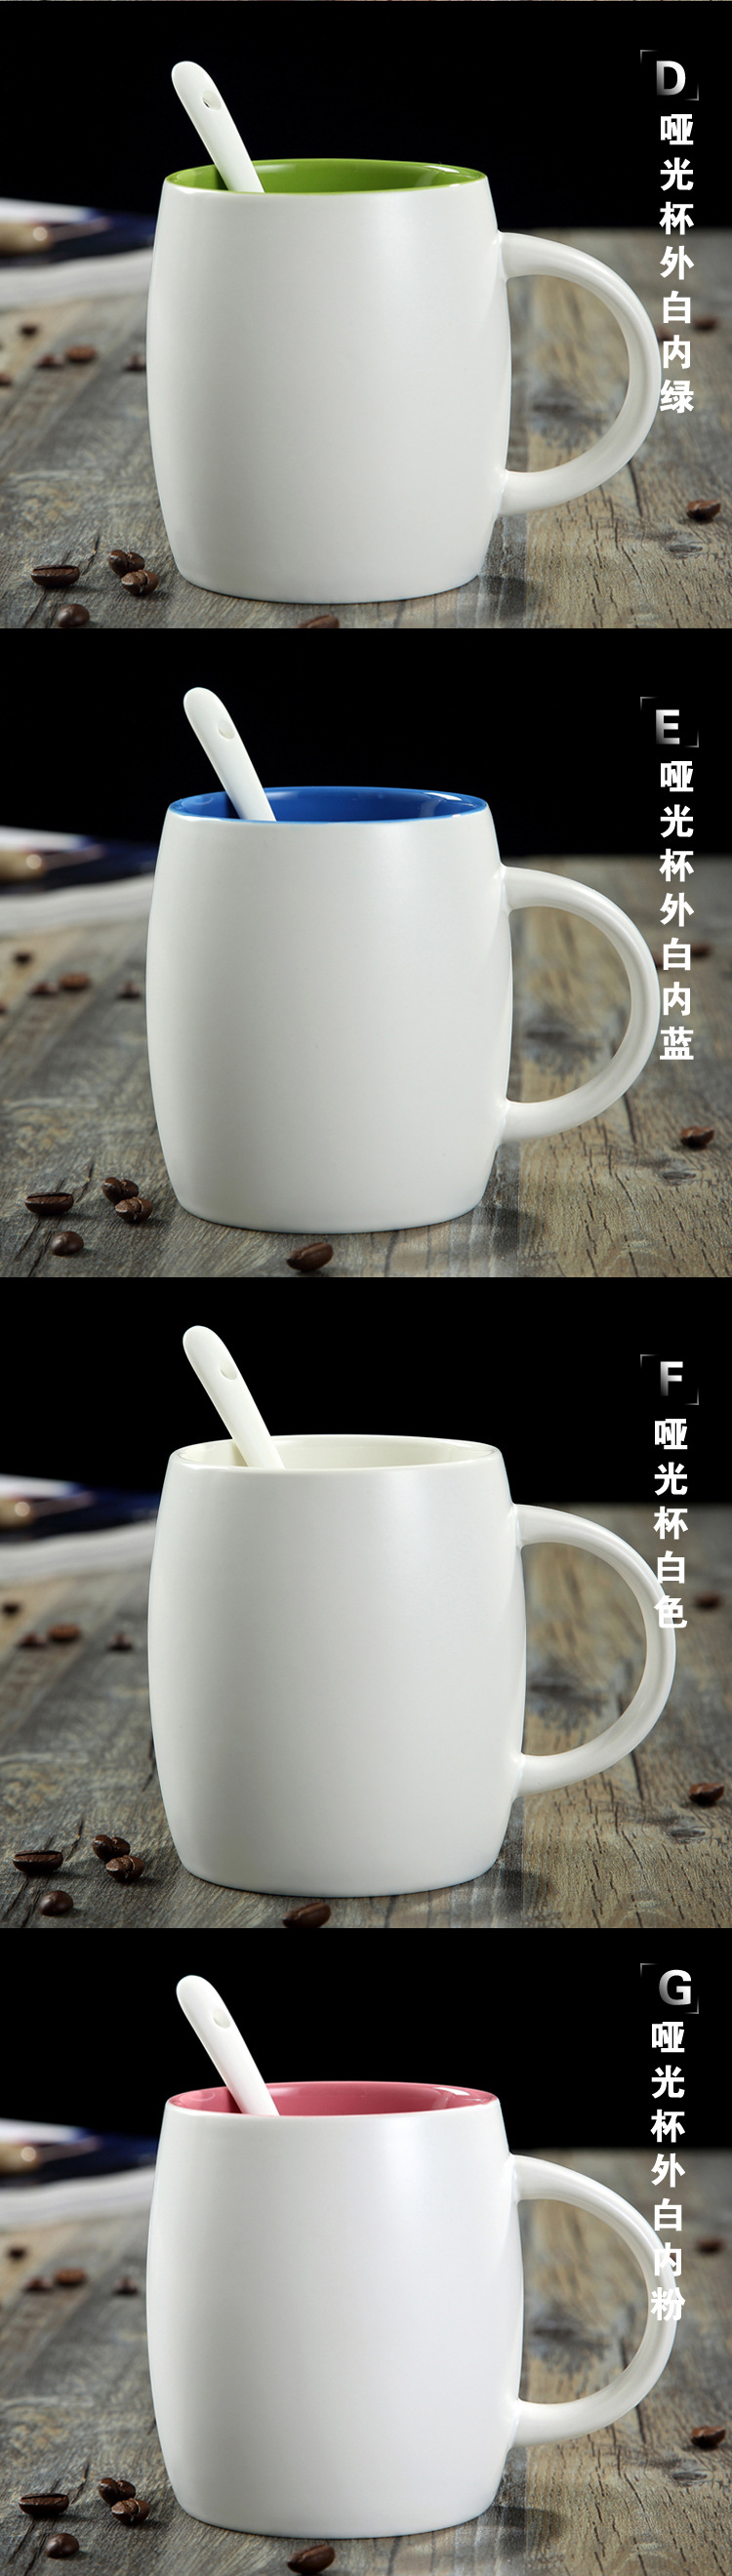 创意陶瓷杯 大肚马克杯 酒桶杯 咖啡杯 礼品广告杯定制